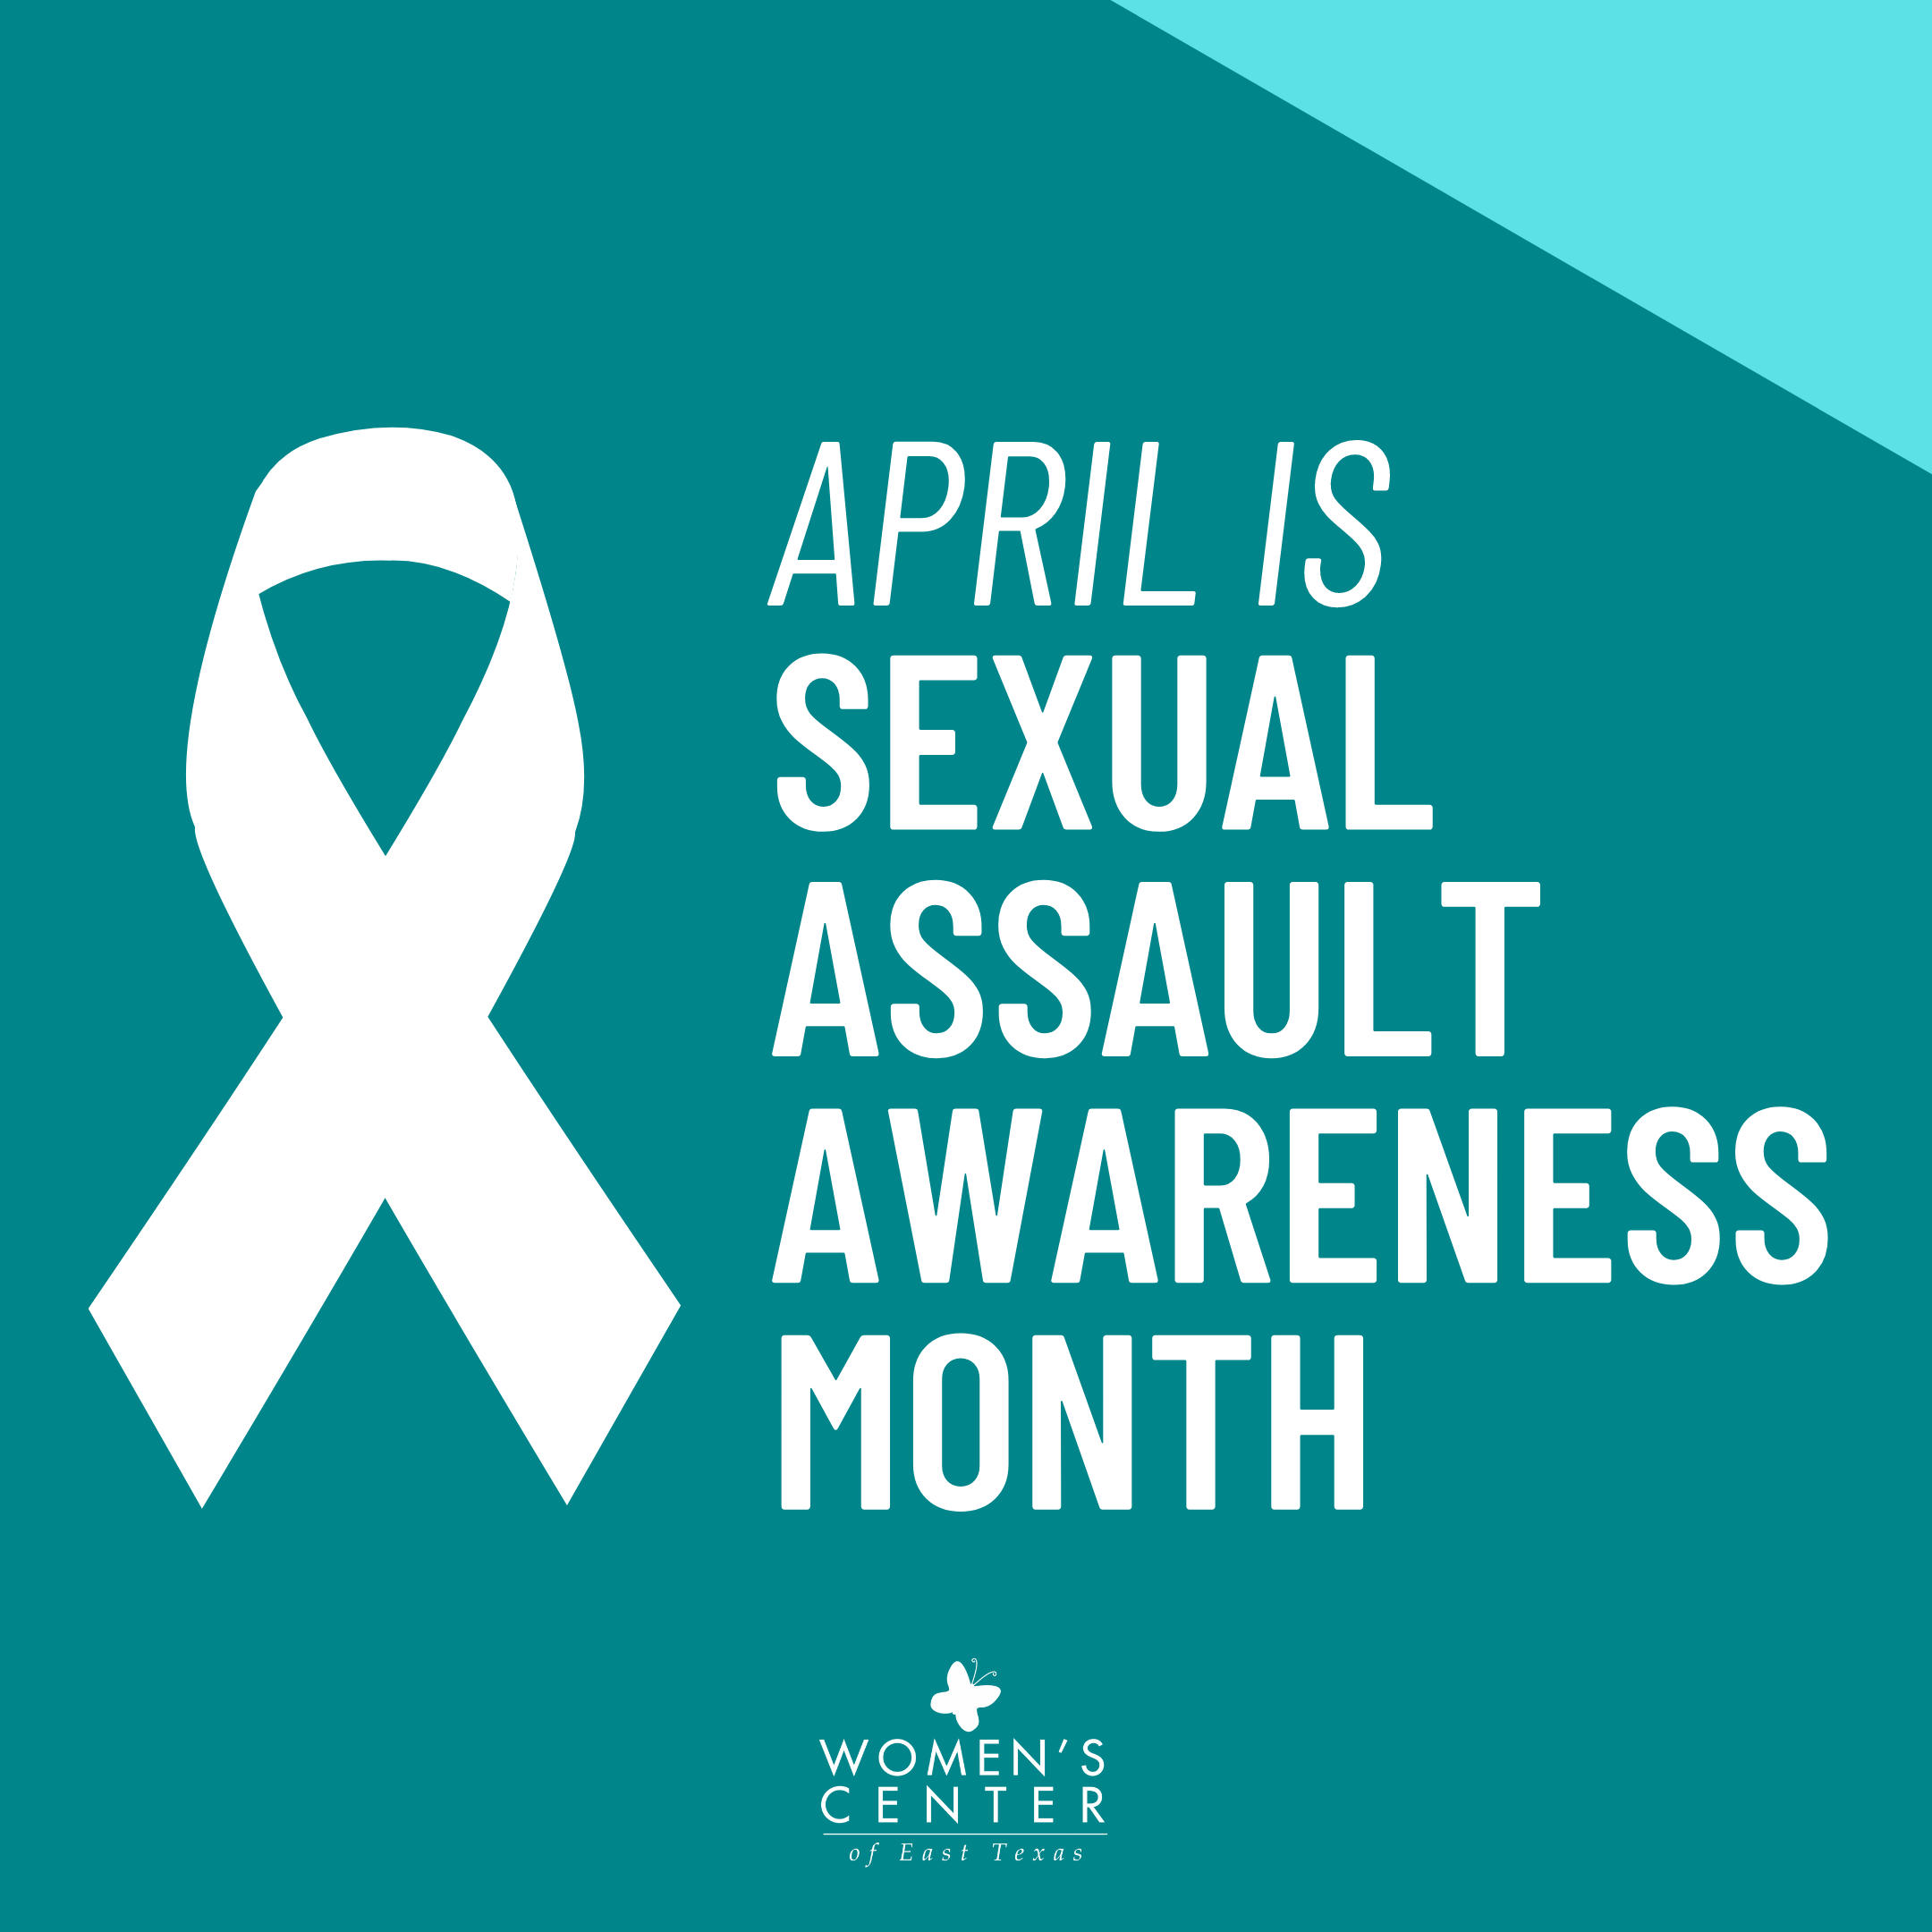 April is Sexual Assault Awareness Month!